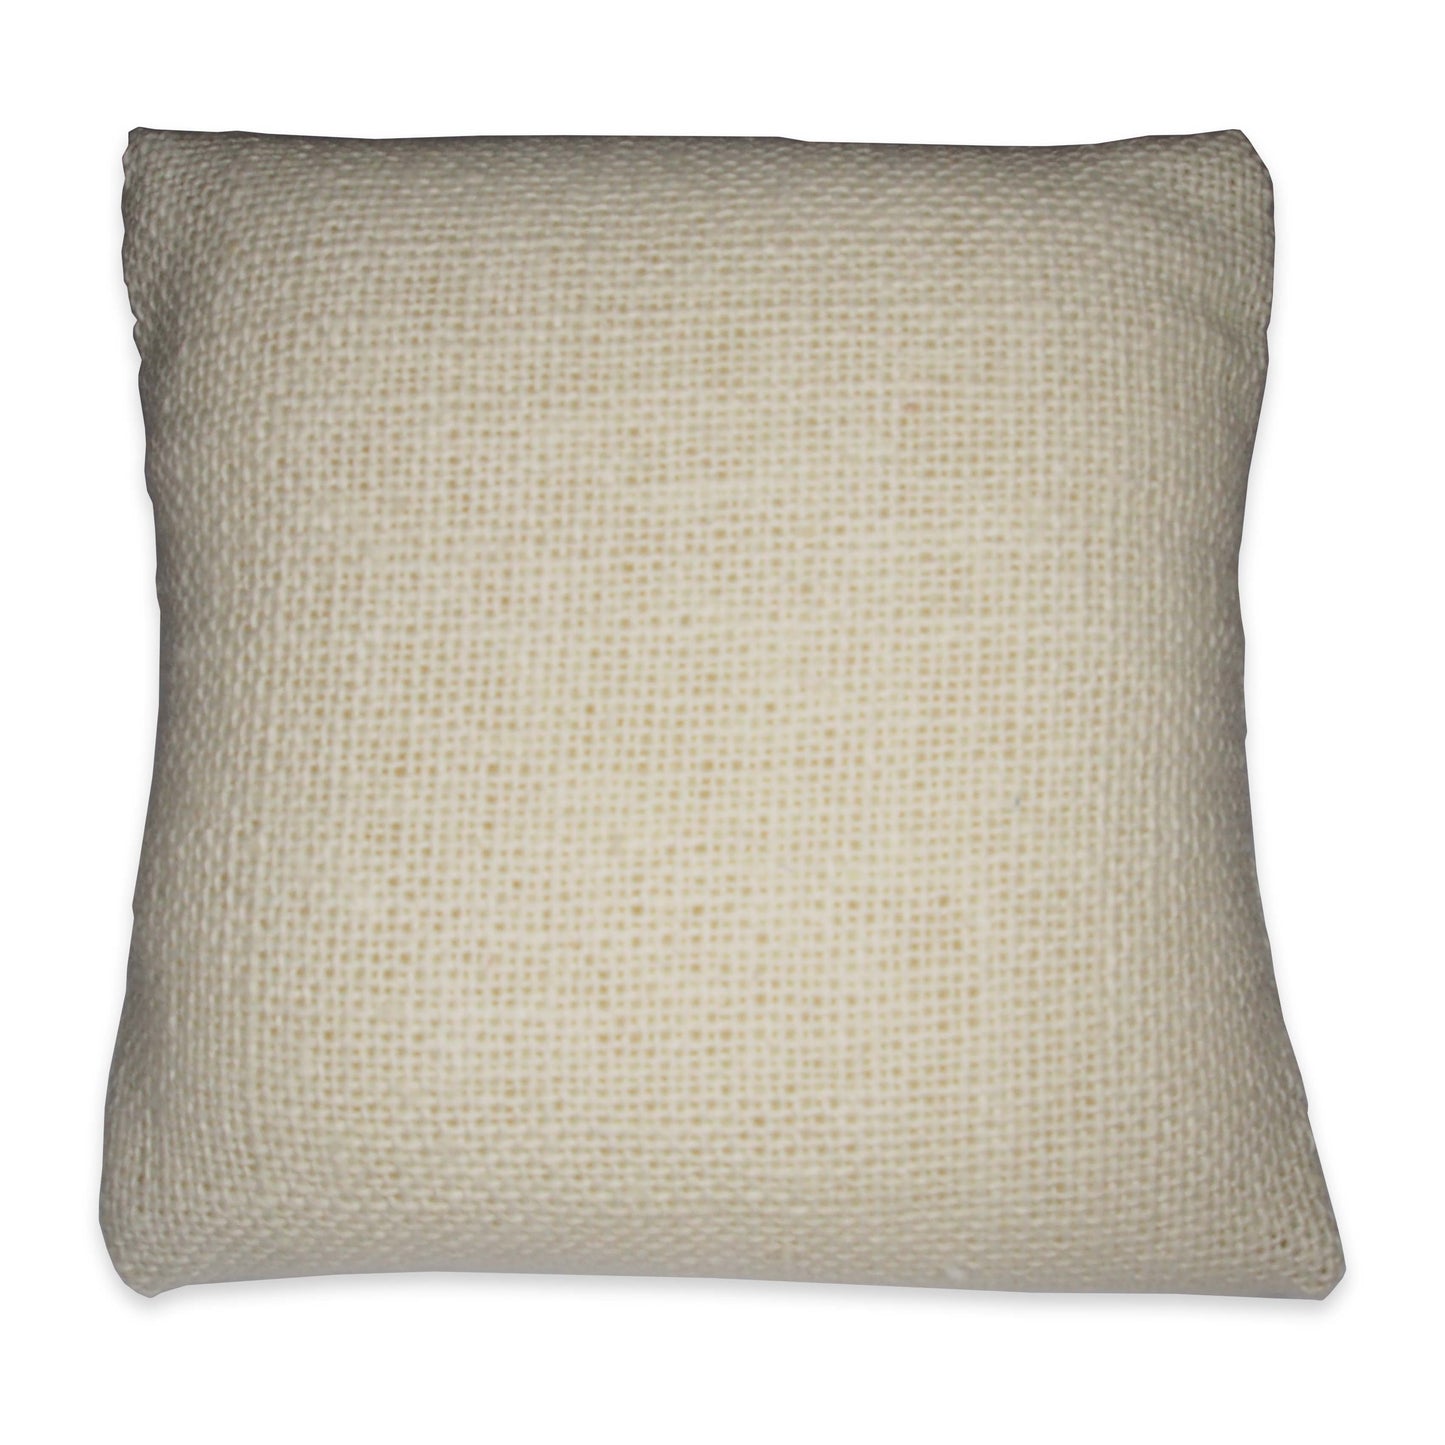 3" Beige Linen Pillow Displays